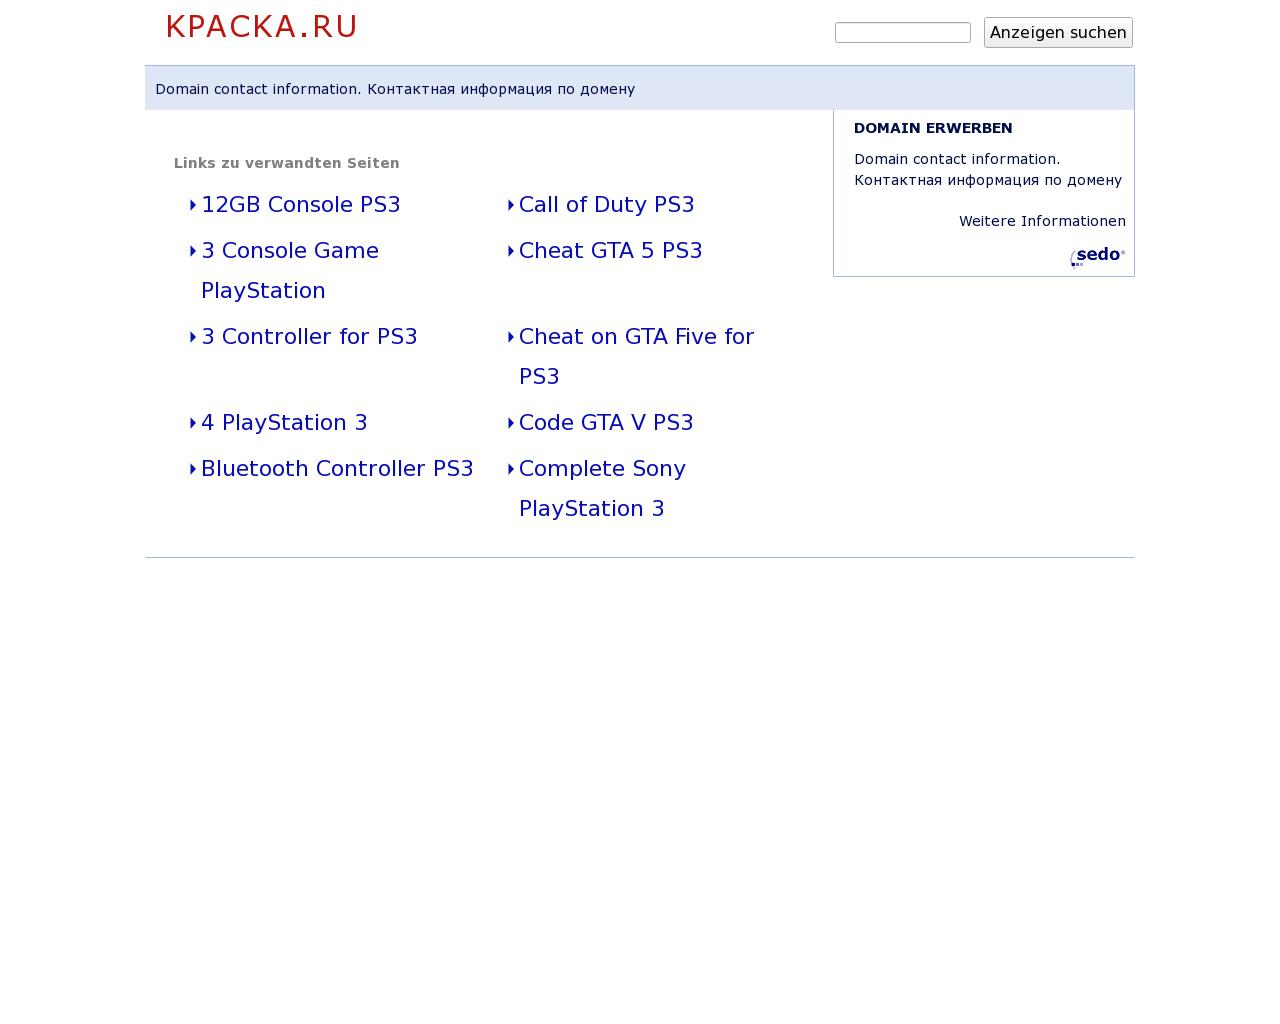 Изображение сайта kpacka.ru в разрешении 1280x1024